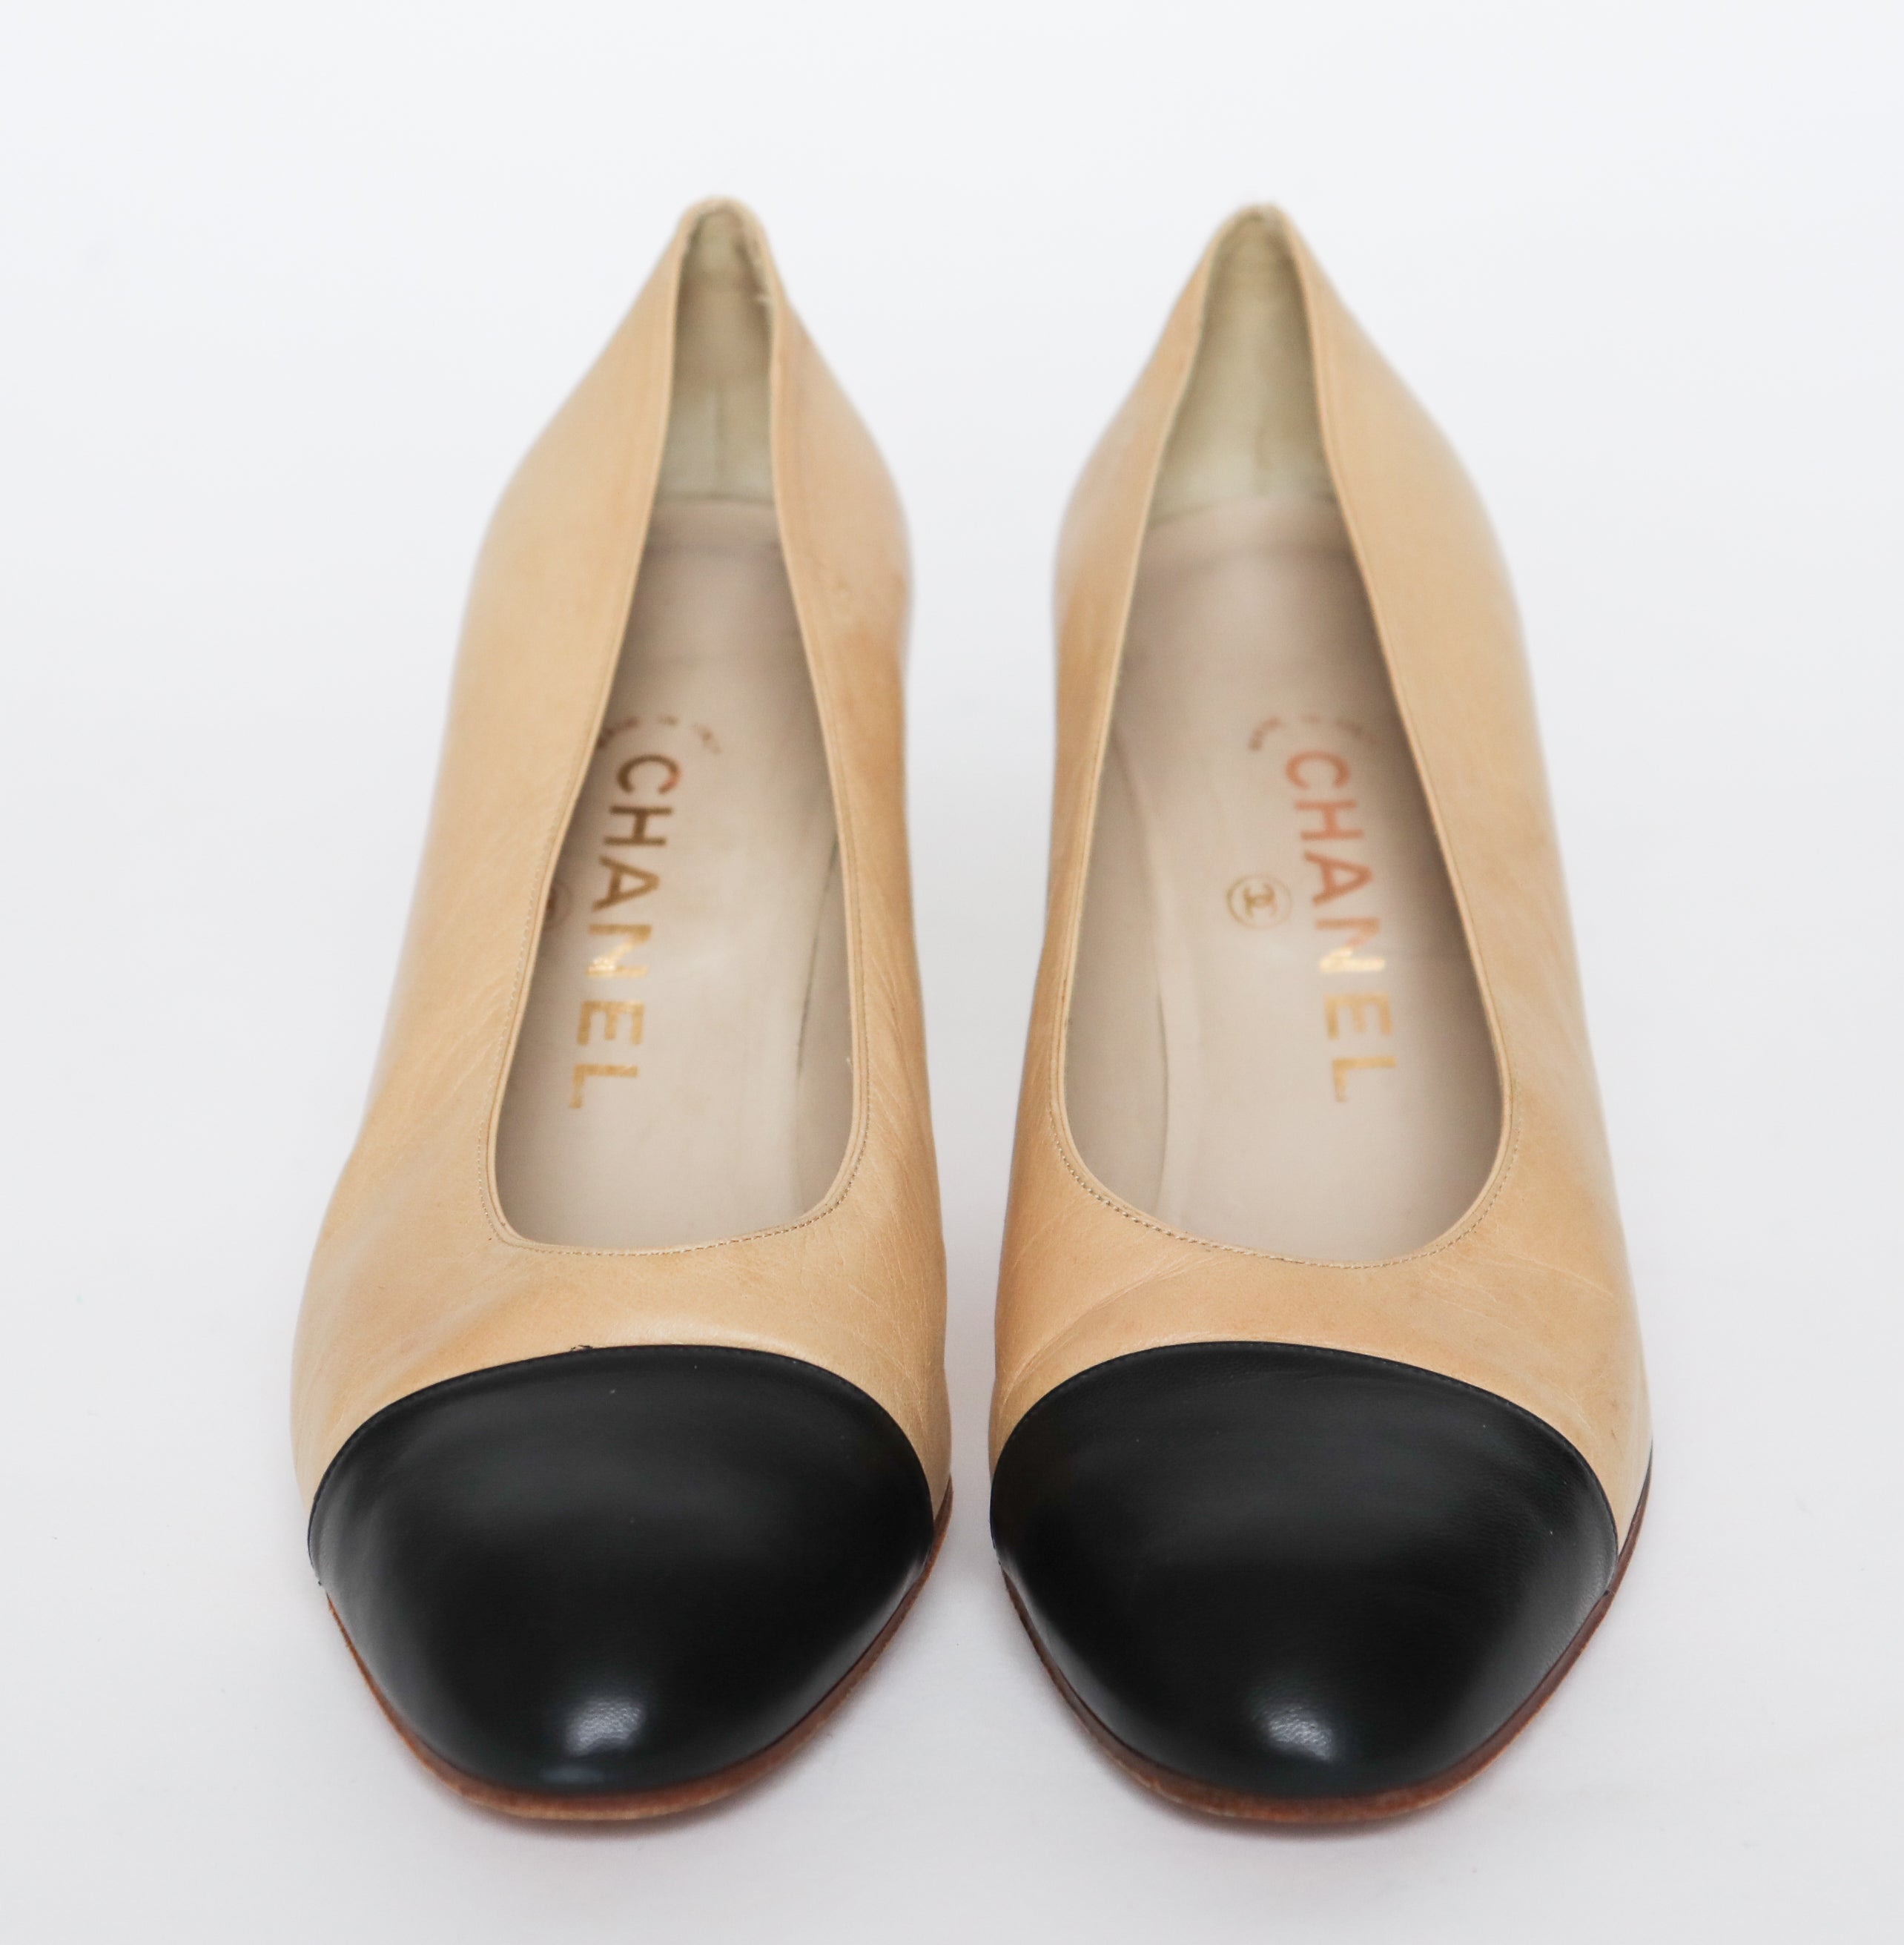 Chanel Vintage Cap Court Shoes - Cream / Black Heels - Label 38 - Fit 37 / 37.5